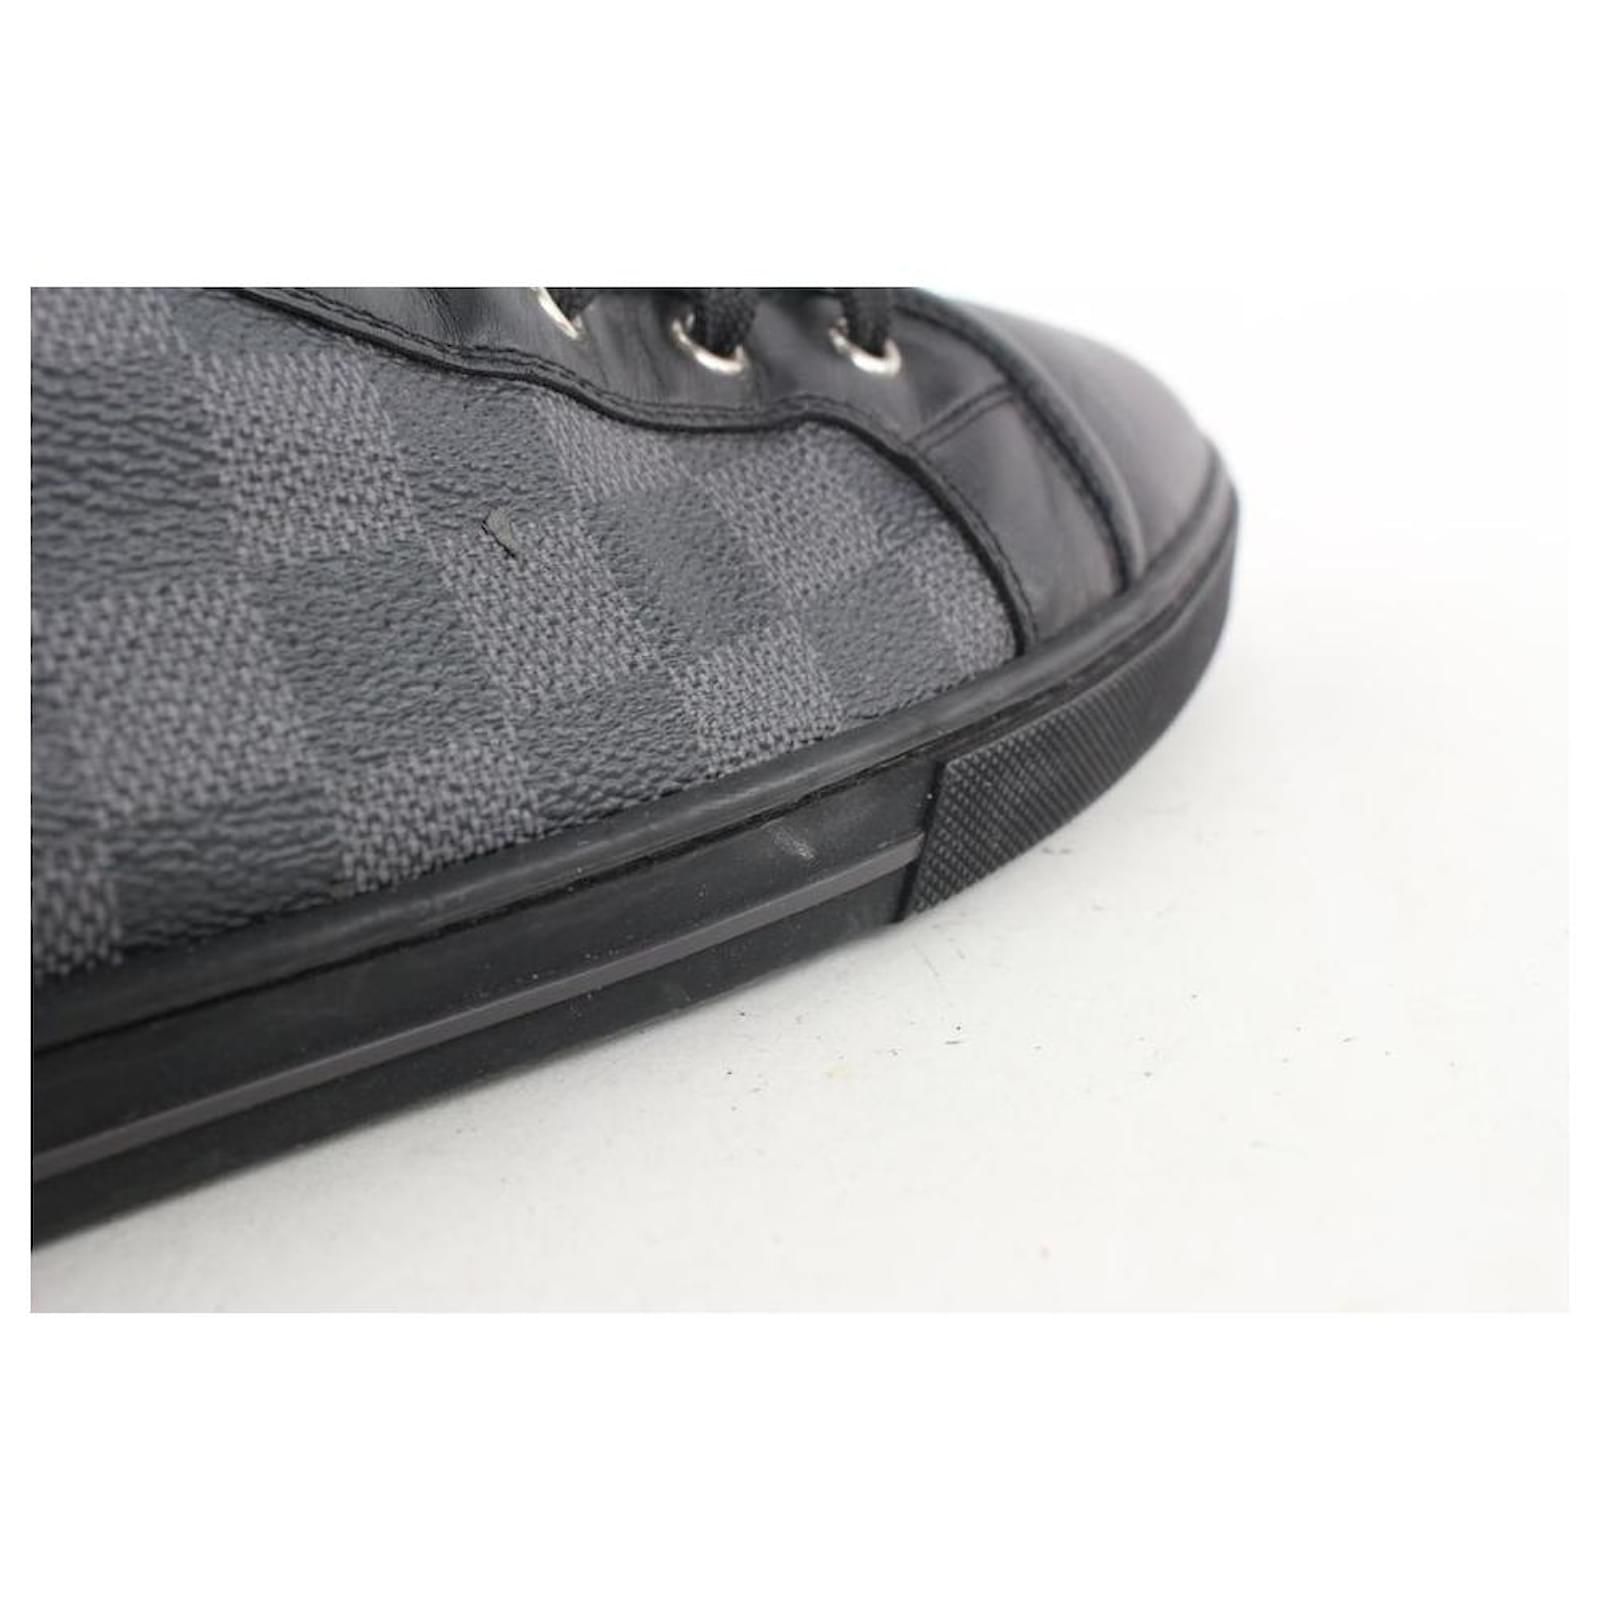 Louis Vuitton Men's US 12 Damier Graphite Punchy Sneaker ref